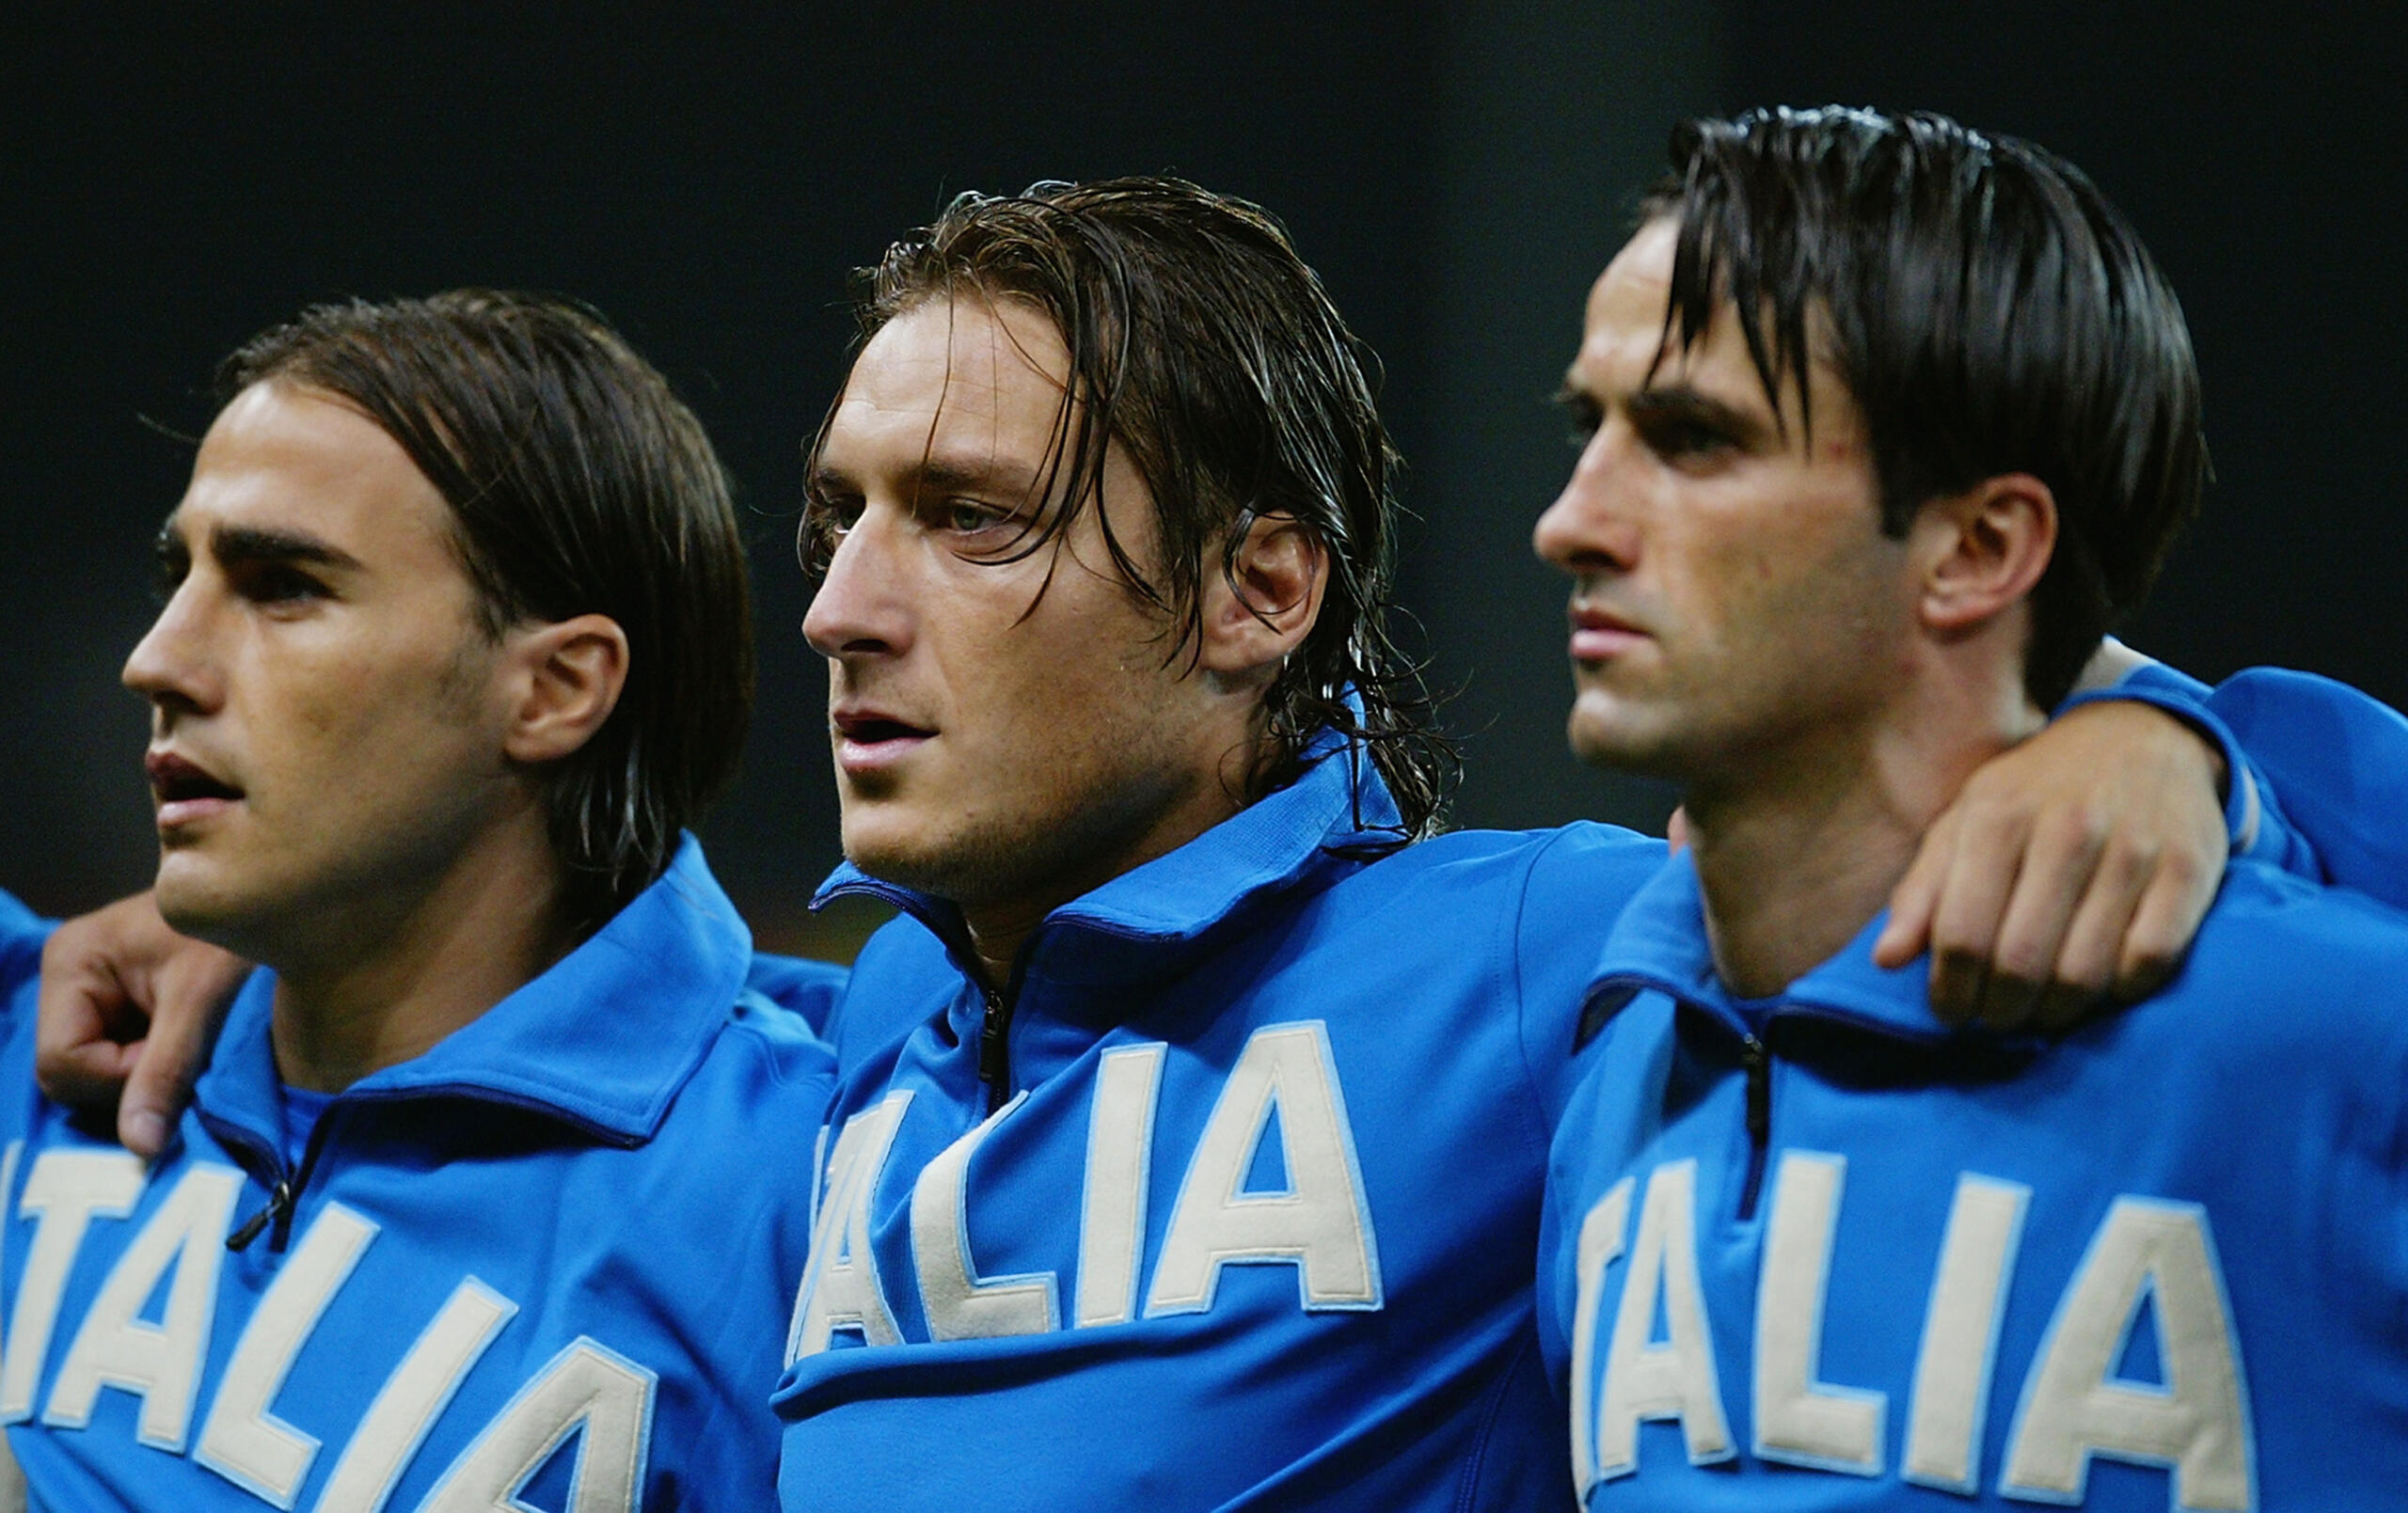 Esordiva in Azzurro 23 anni fa Francesco Totti: erano le qualificazioni ad Euro2000, che portarono Totti al leggendario rigore contro l'Olanda.